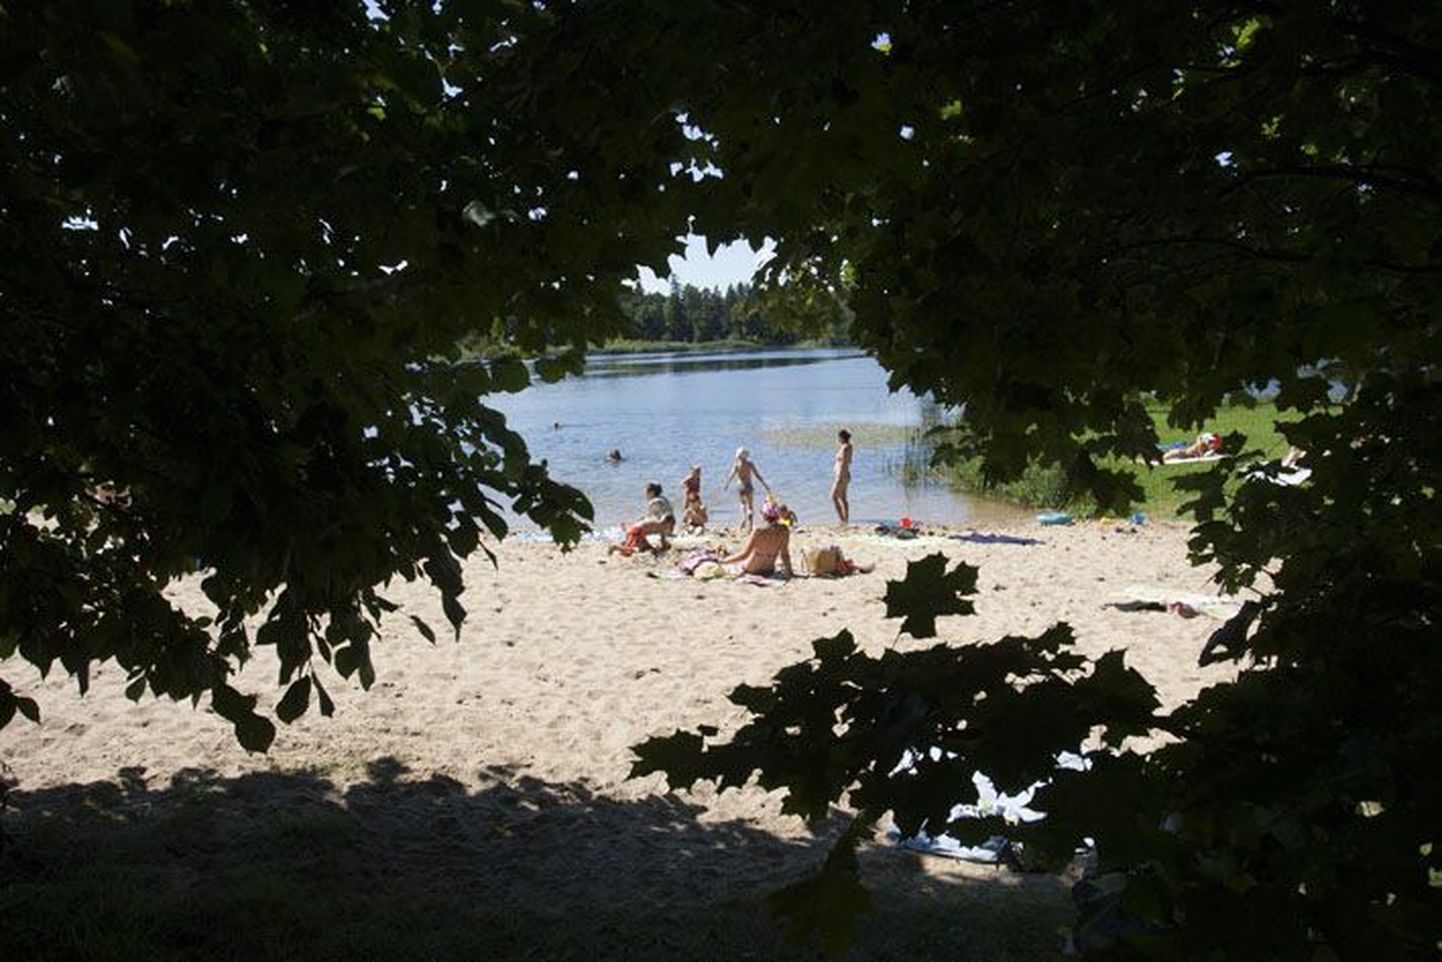 Seni teadmata põhjustel uppus noor mees laupäeval Porkuni järve.